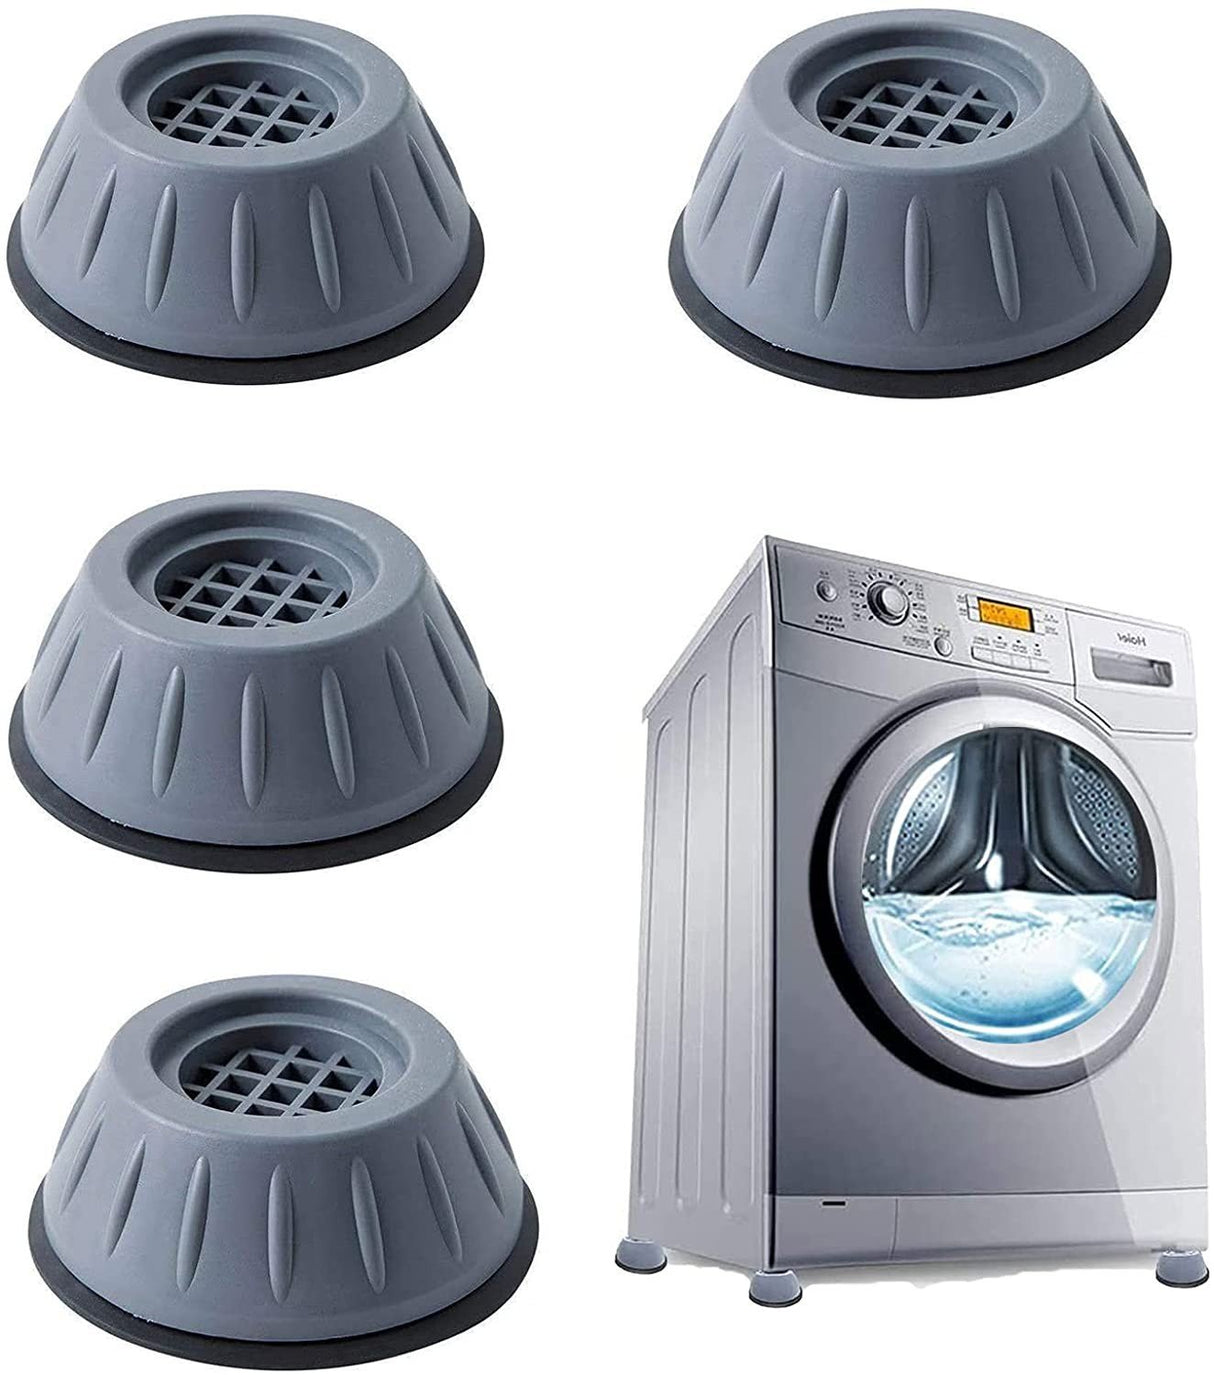 Piedini per lavatrice 4 pezzi antiscivolo e anti-vibrazione – FLR